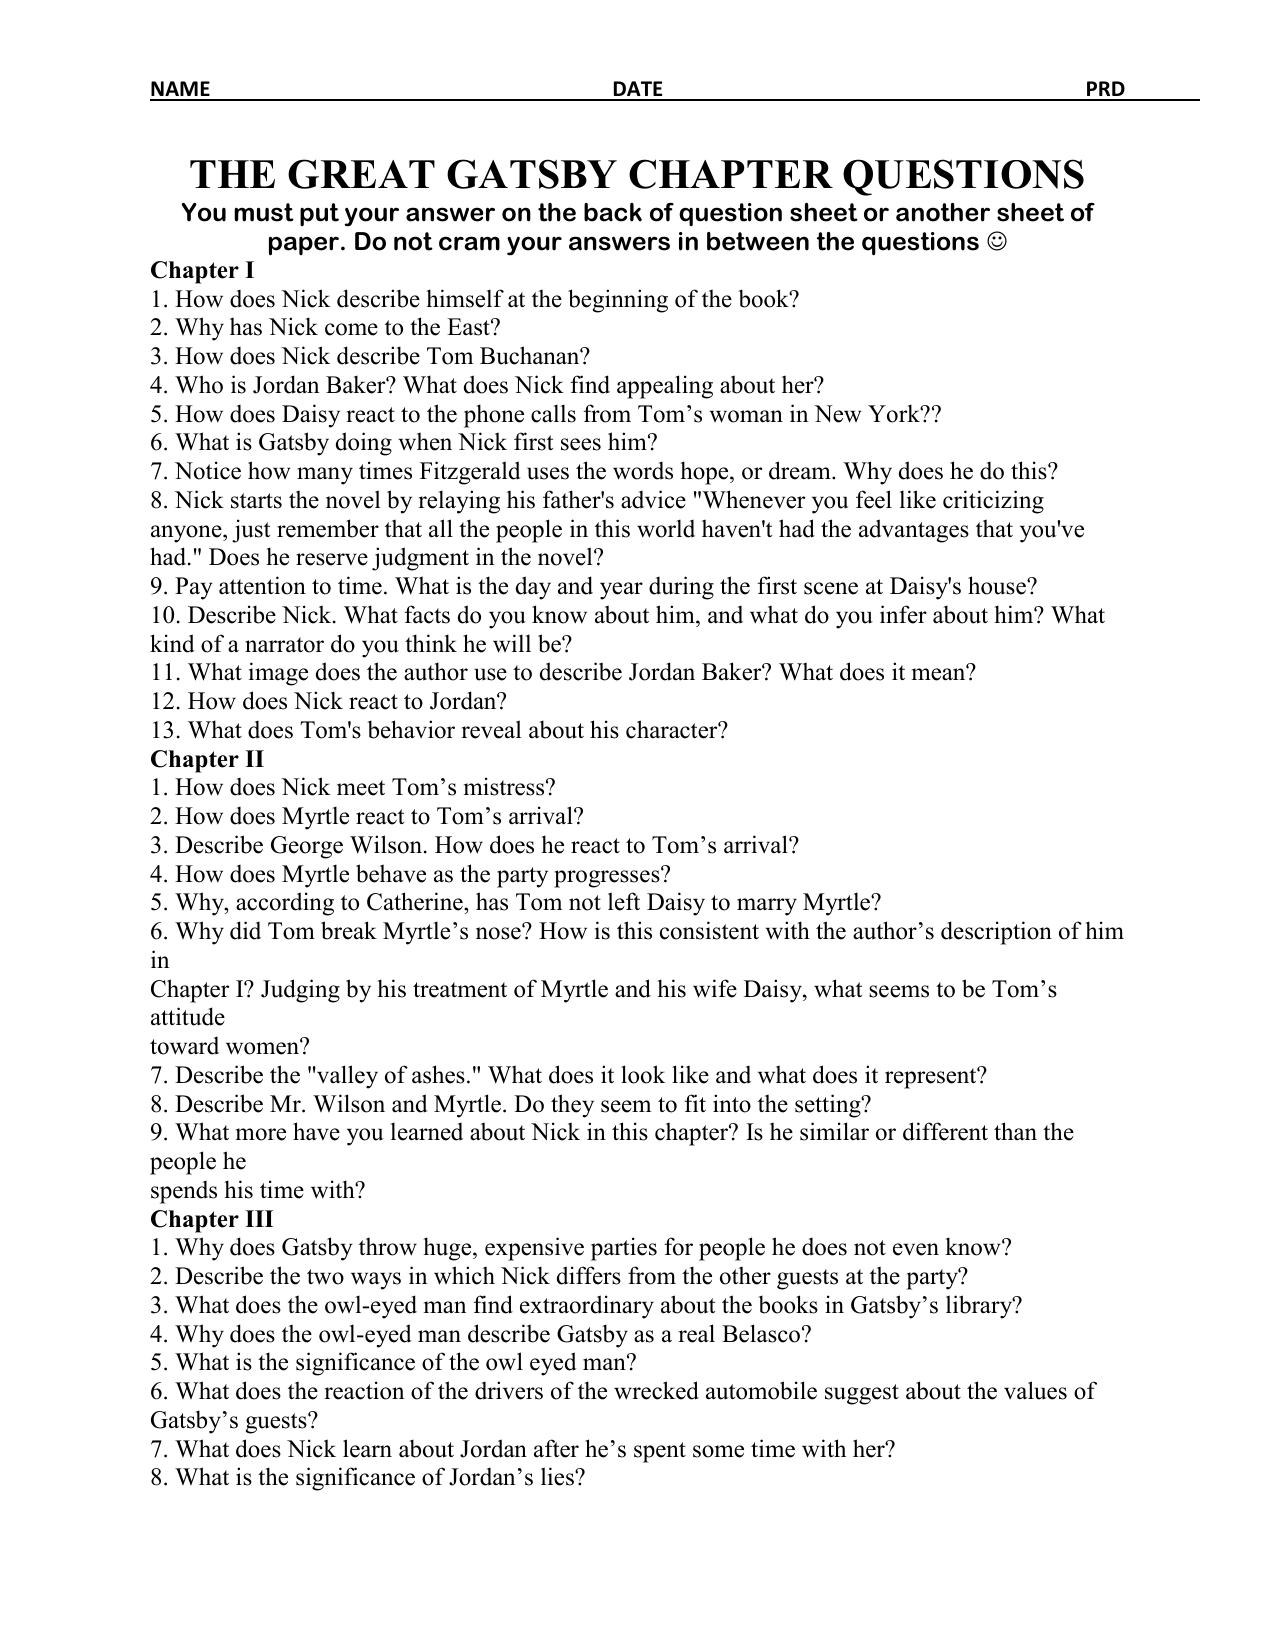 gatsby essay questions